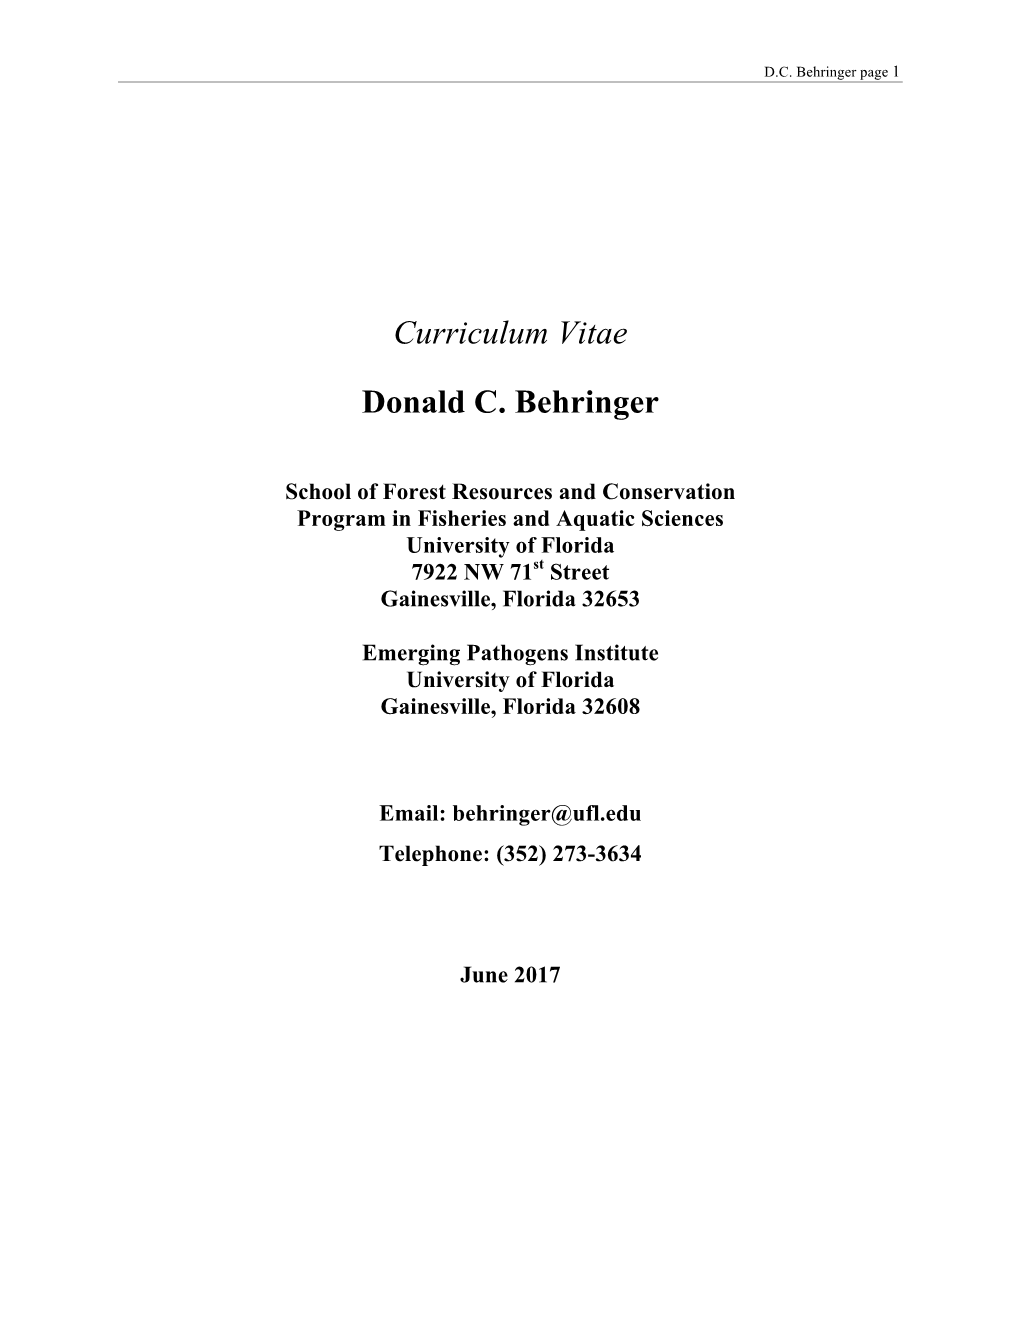 Curriculum Vitae Donald C. Behringer